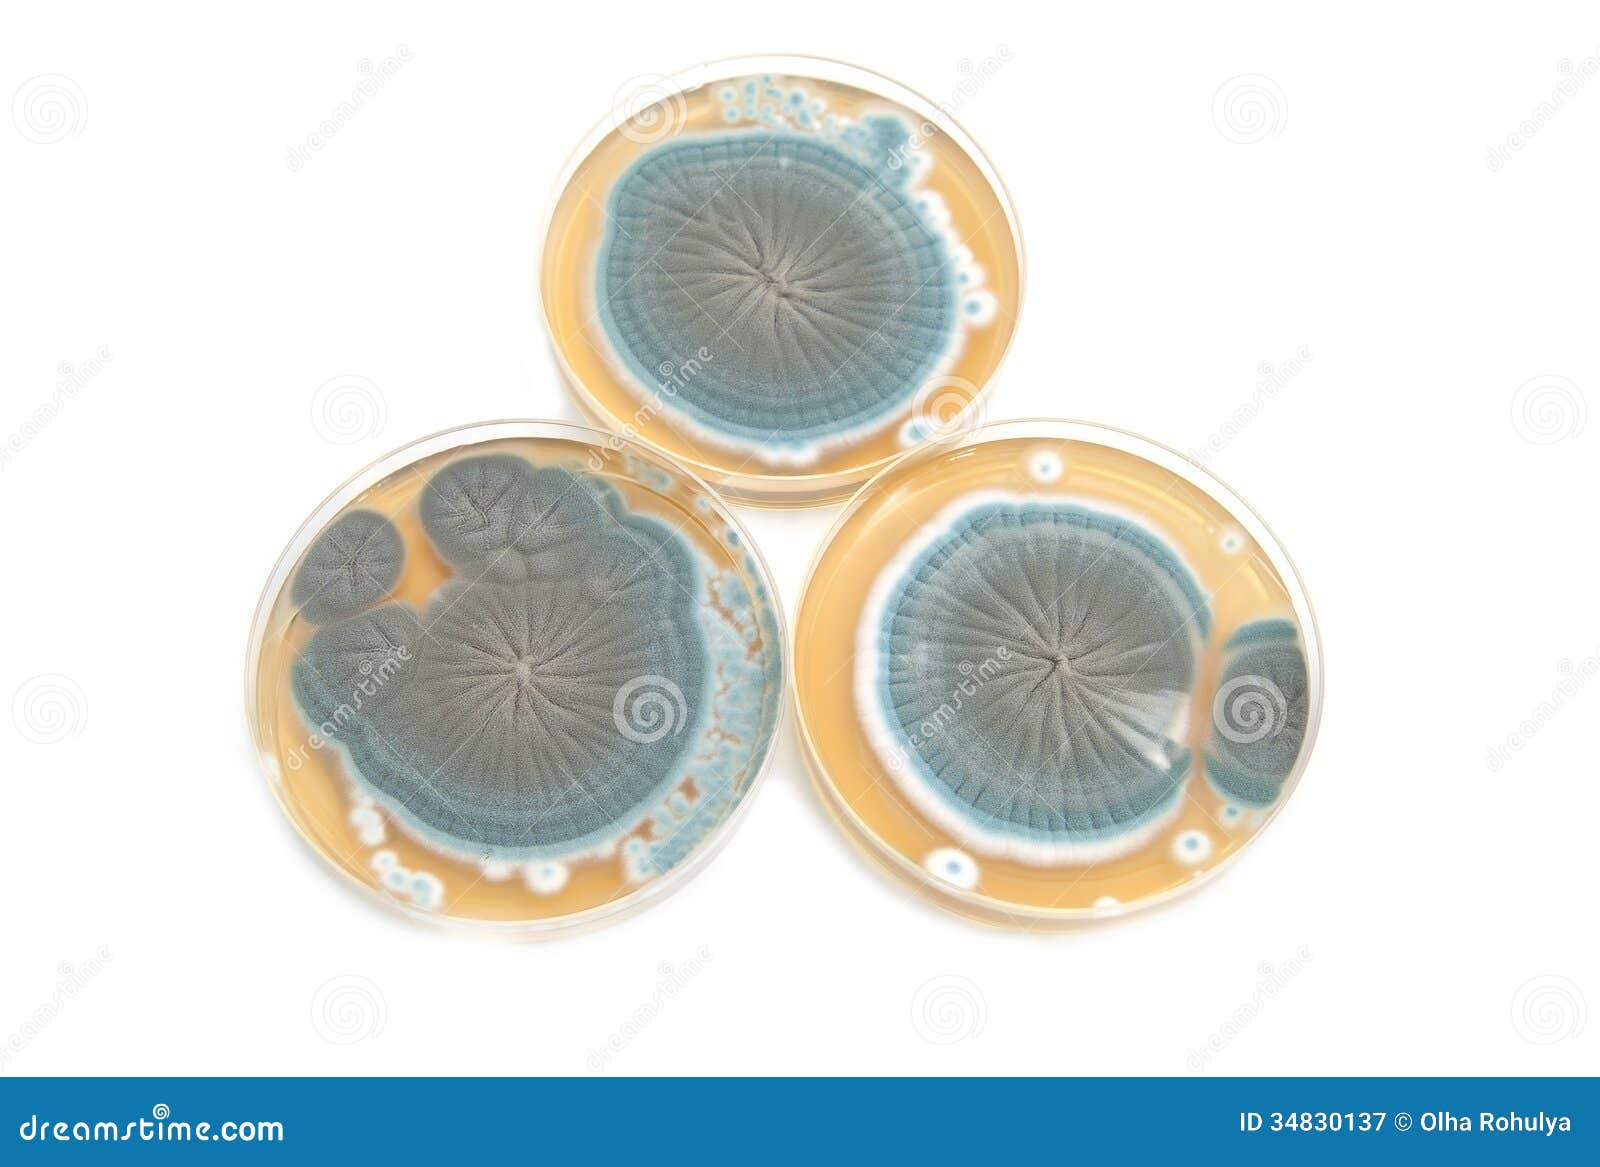 penicillium fungi on agar plates over white